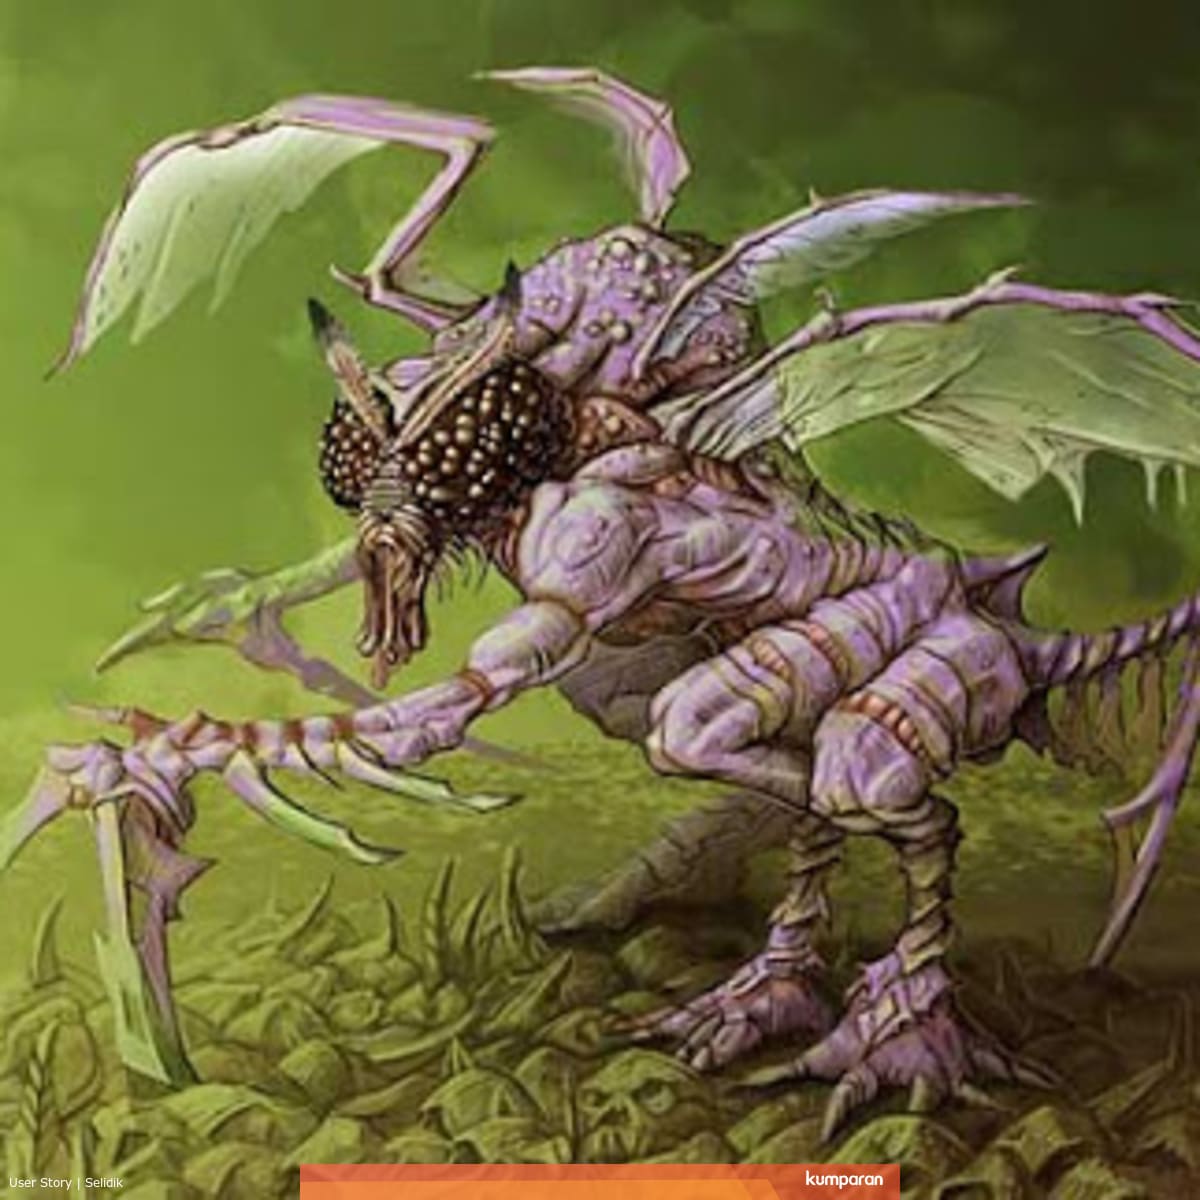 Chúa tể của loài ruồi Beelzebub – Con quỷ quyền lực chỉ xếp sau Lucifer